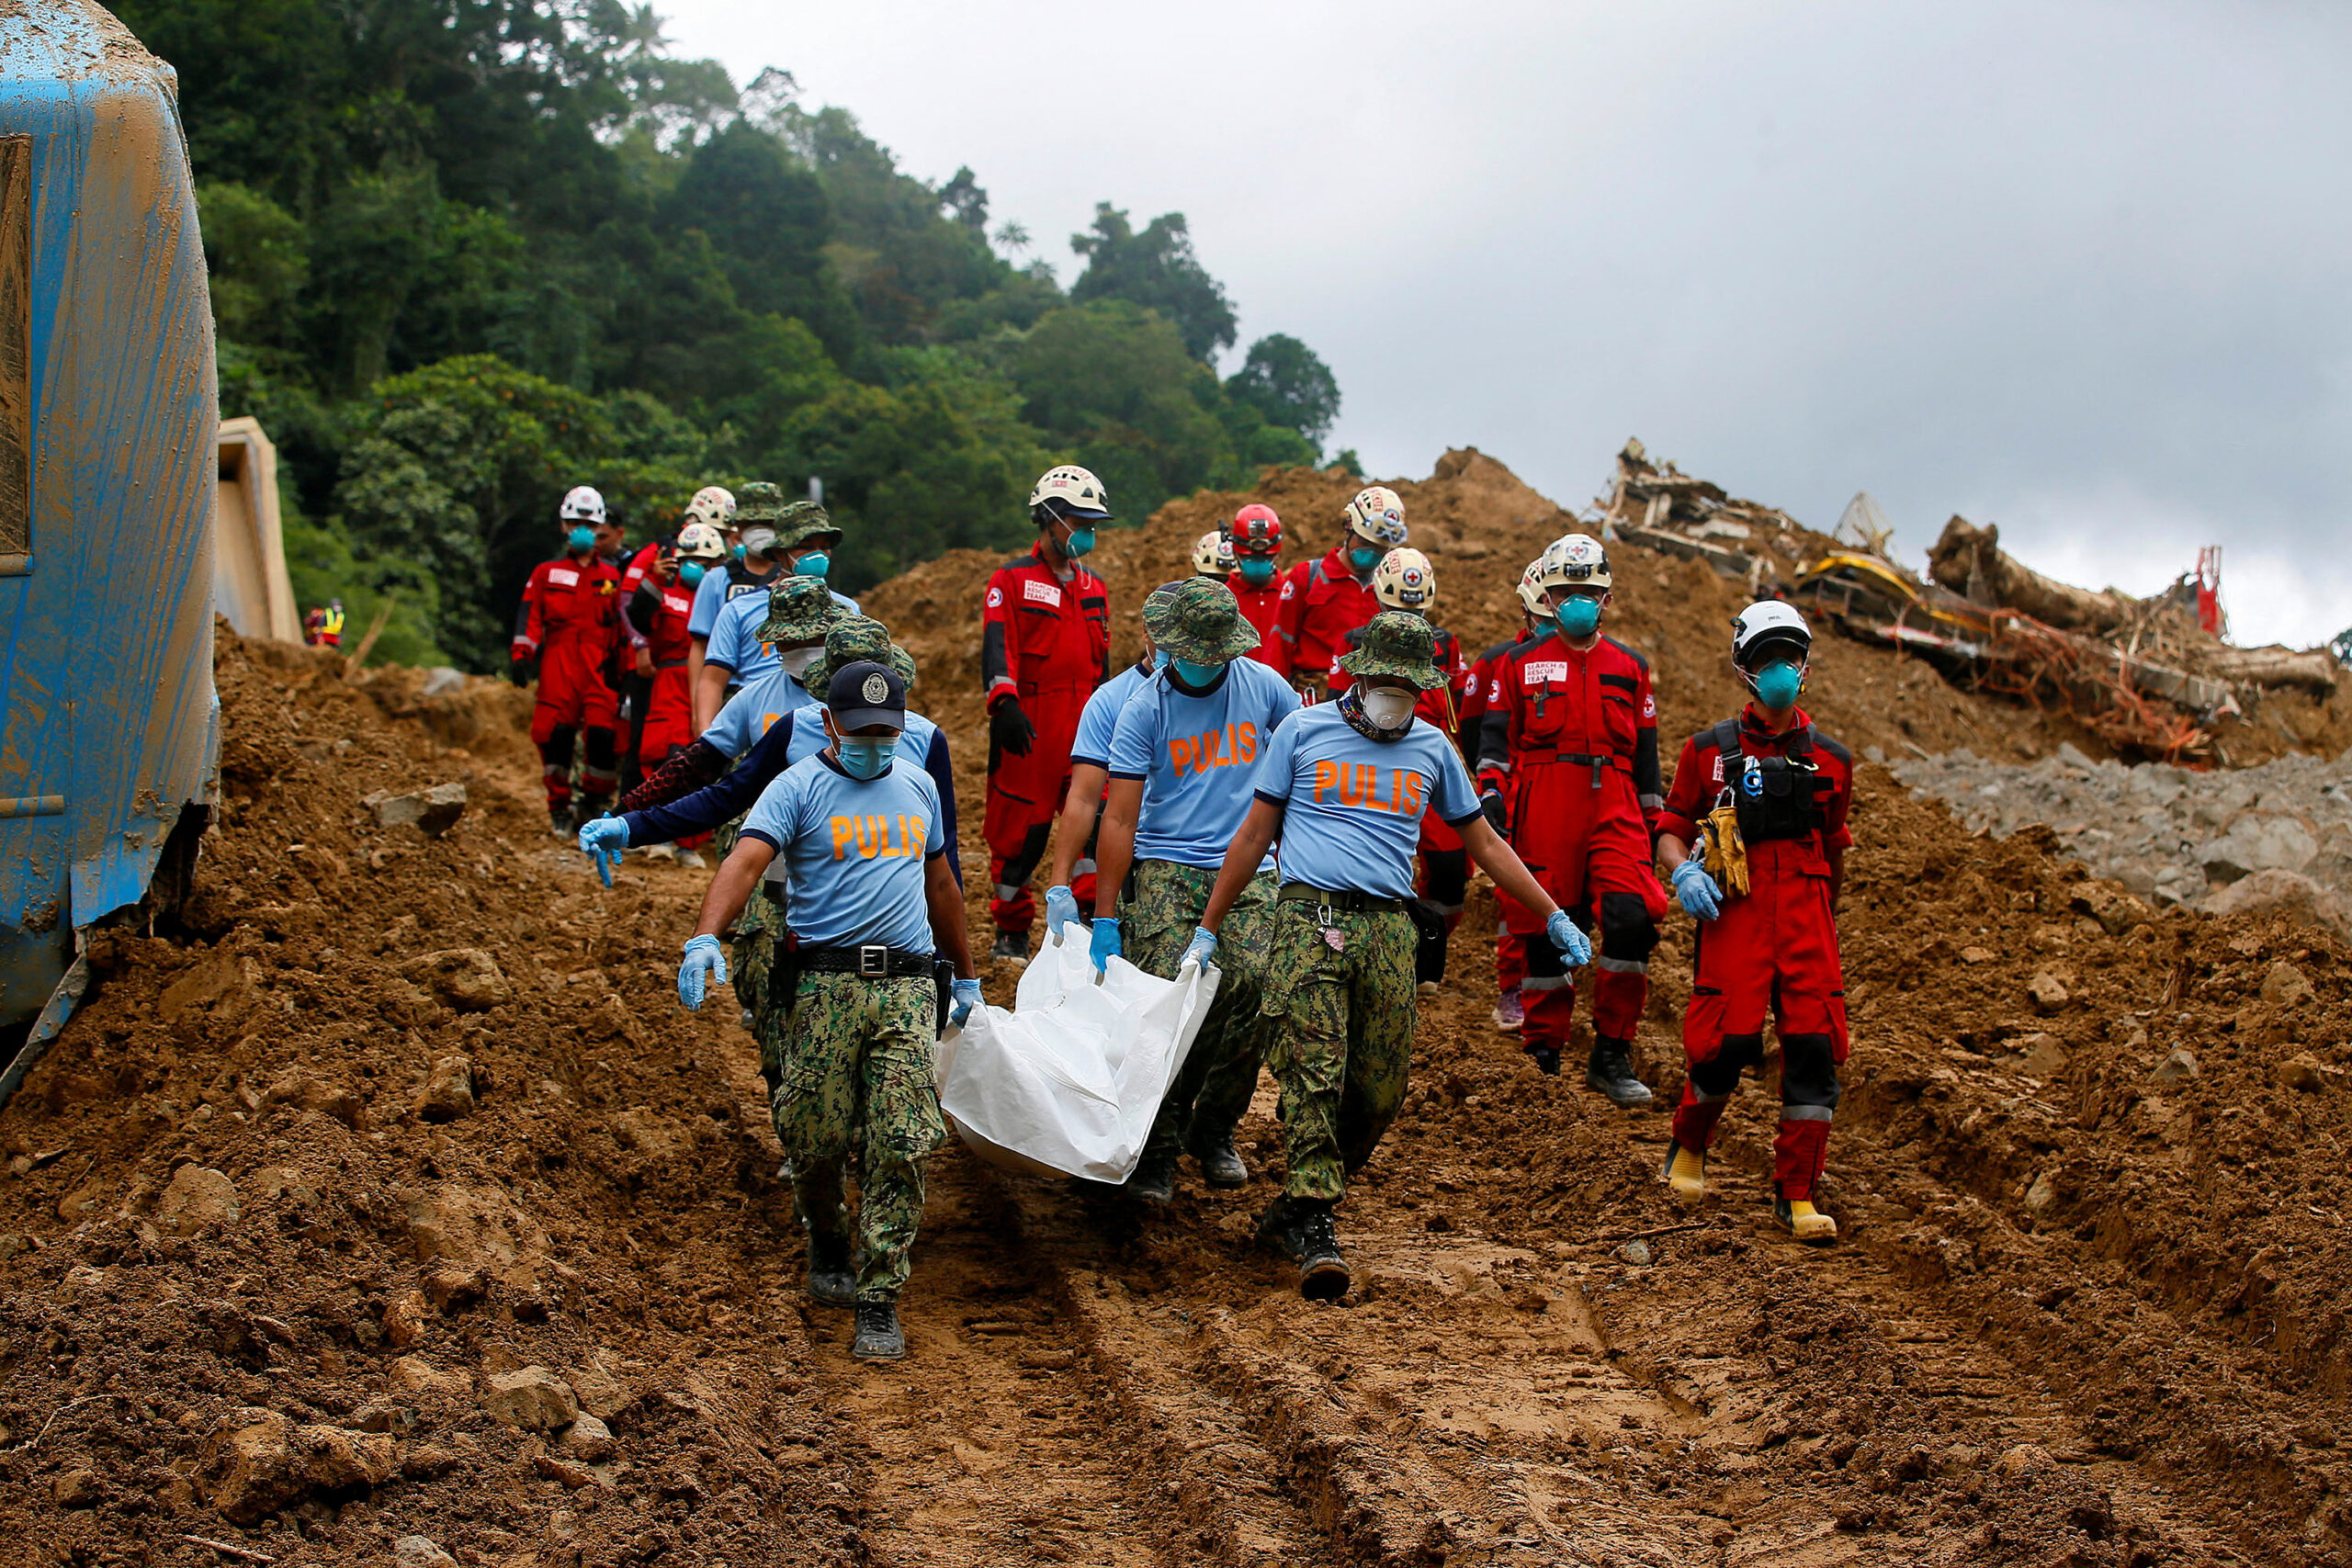 KMU demands independent investigation on Maco landslide incident